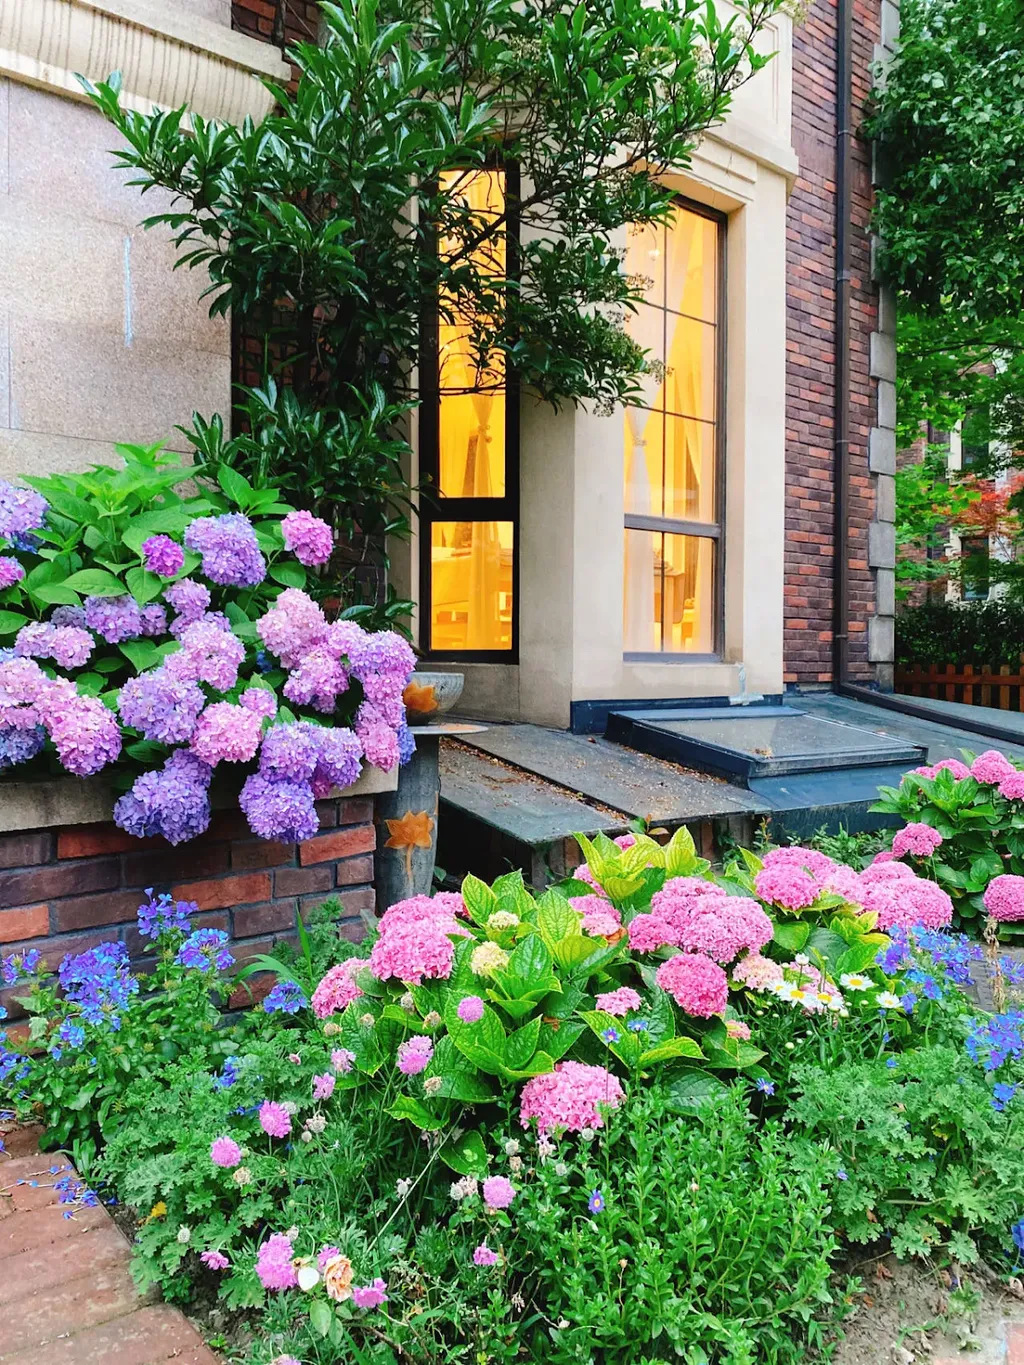 Hoa cẩm tú cầu là một lựa chọn tuyệt vời để trang trí ngoại thất, vườn nhà, lối đi và hàng rào